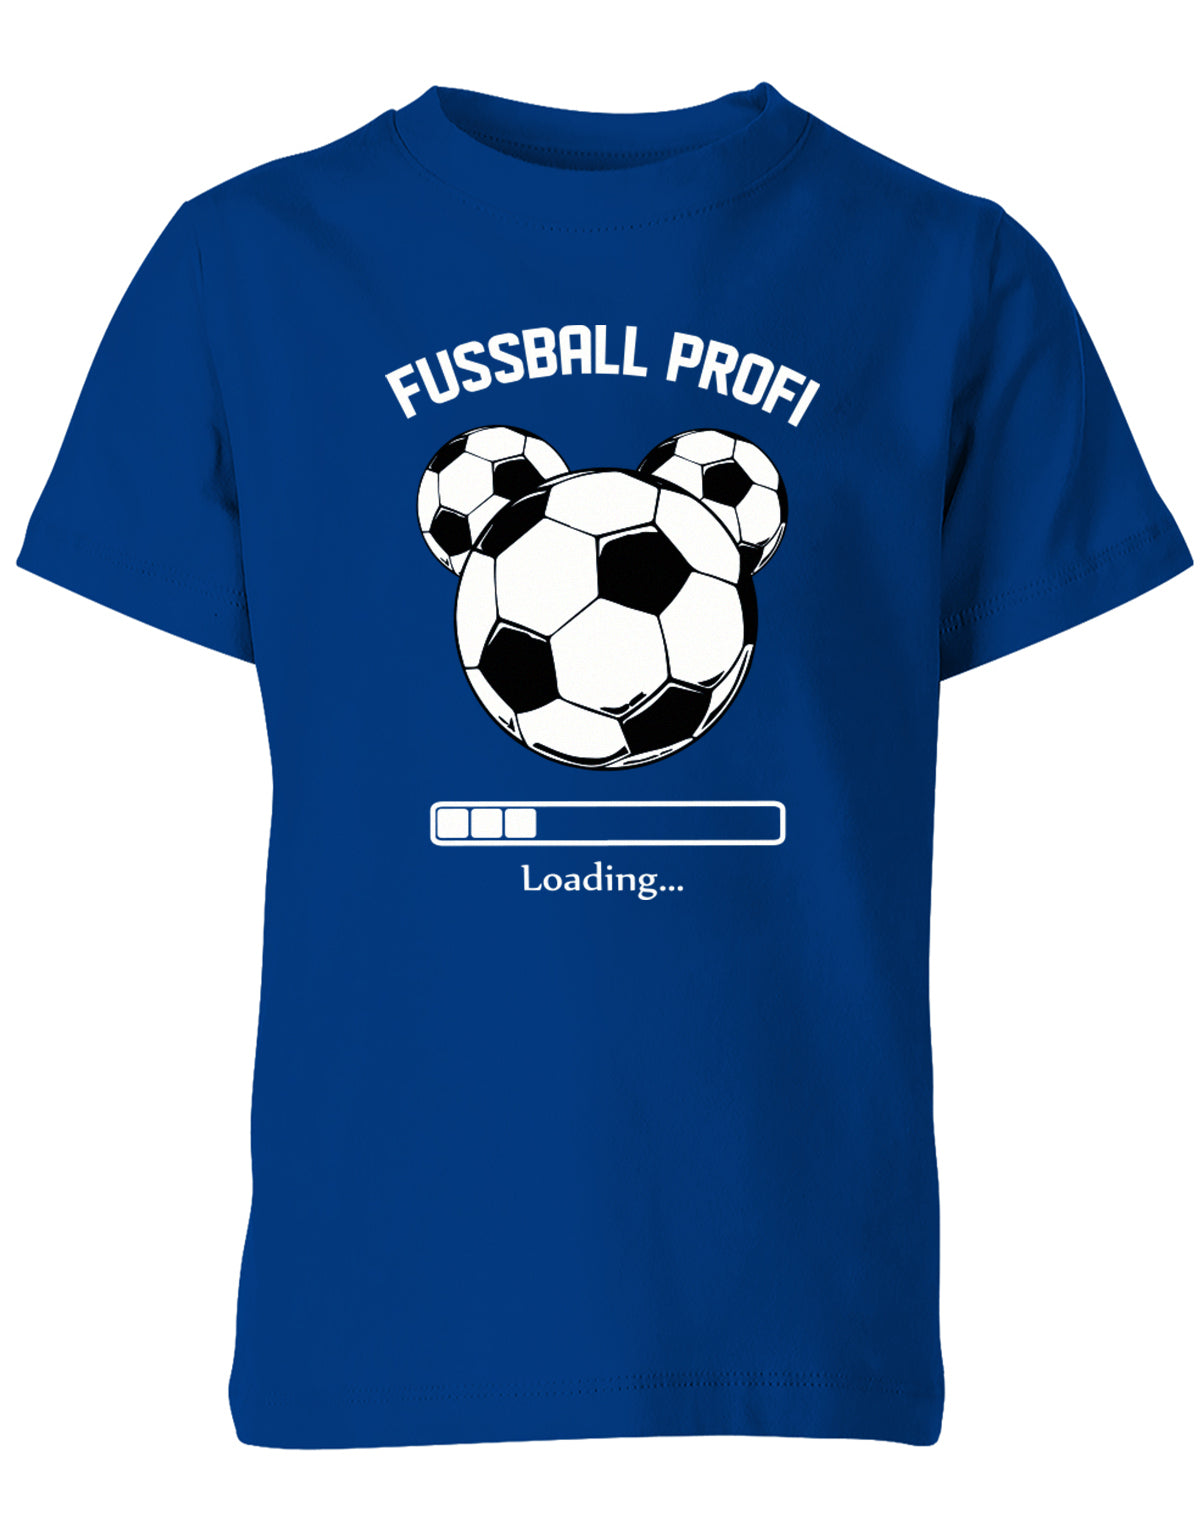 Fussball-Profi-Kinder-Shirt-Royalblau